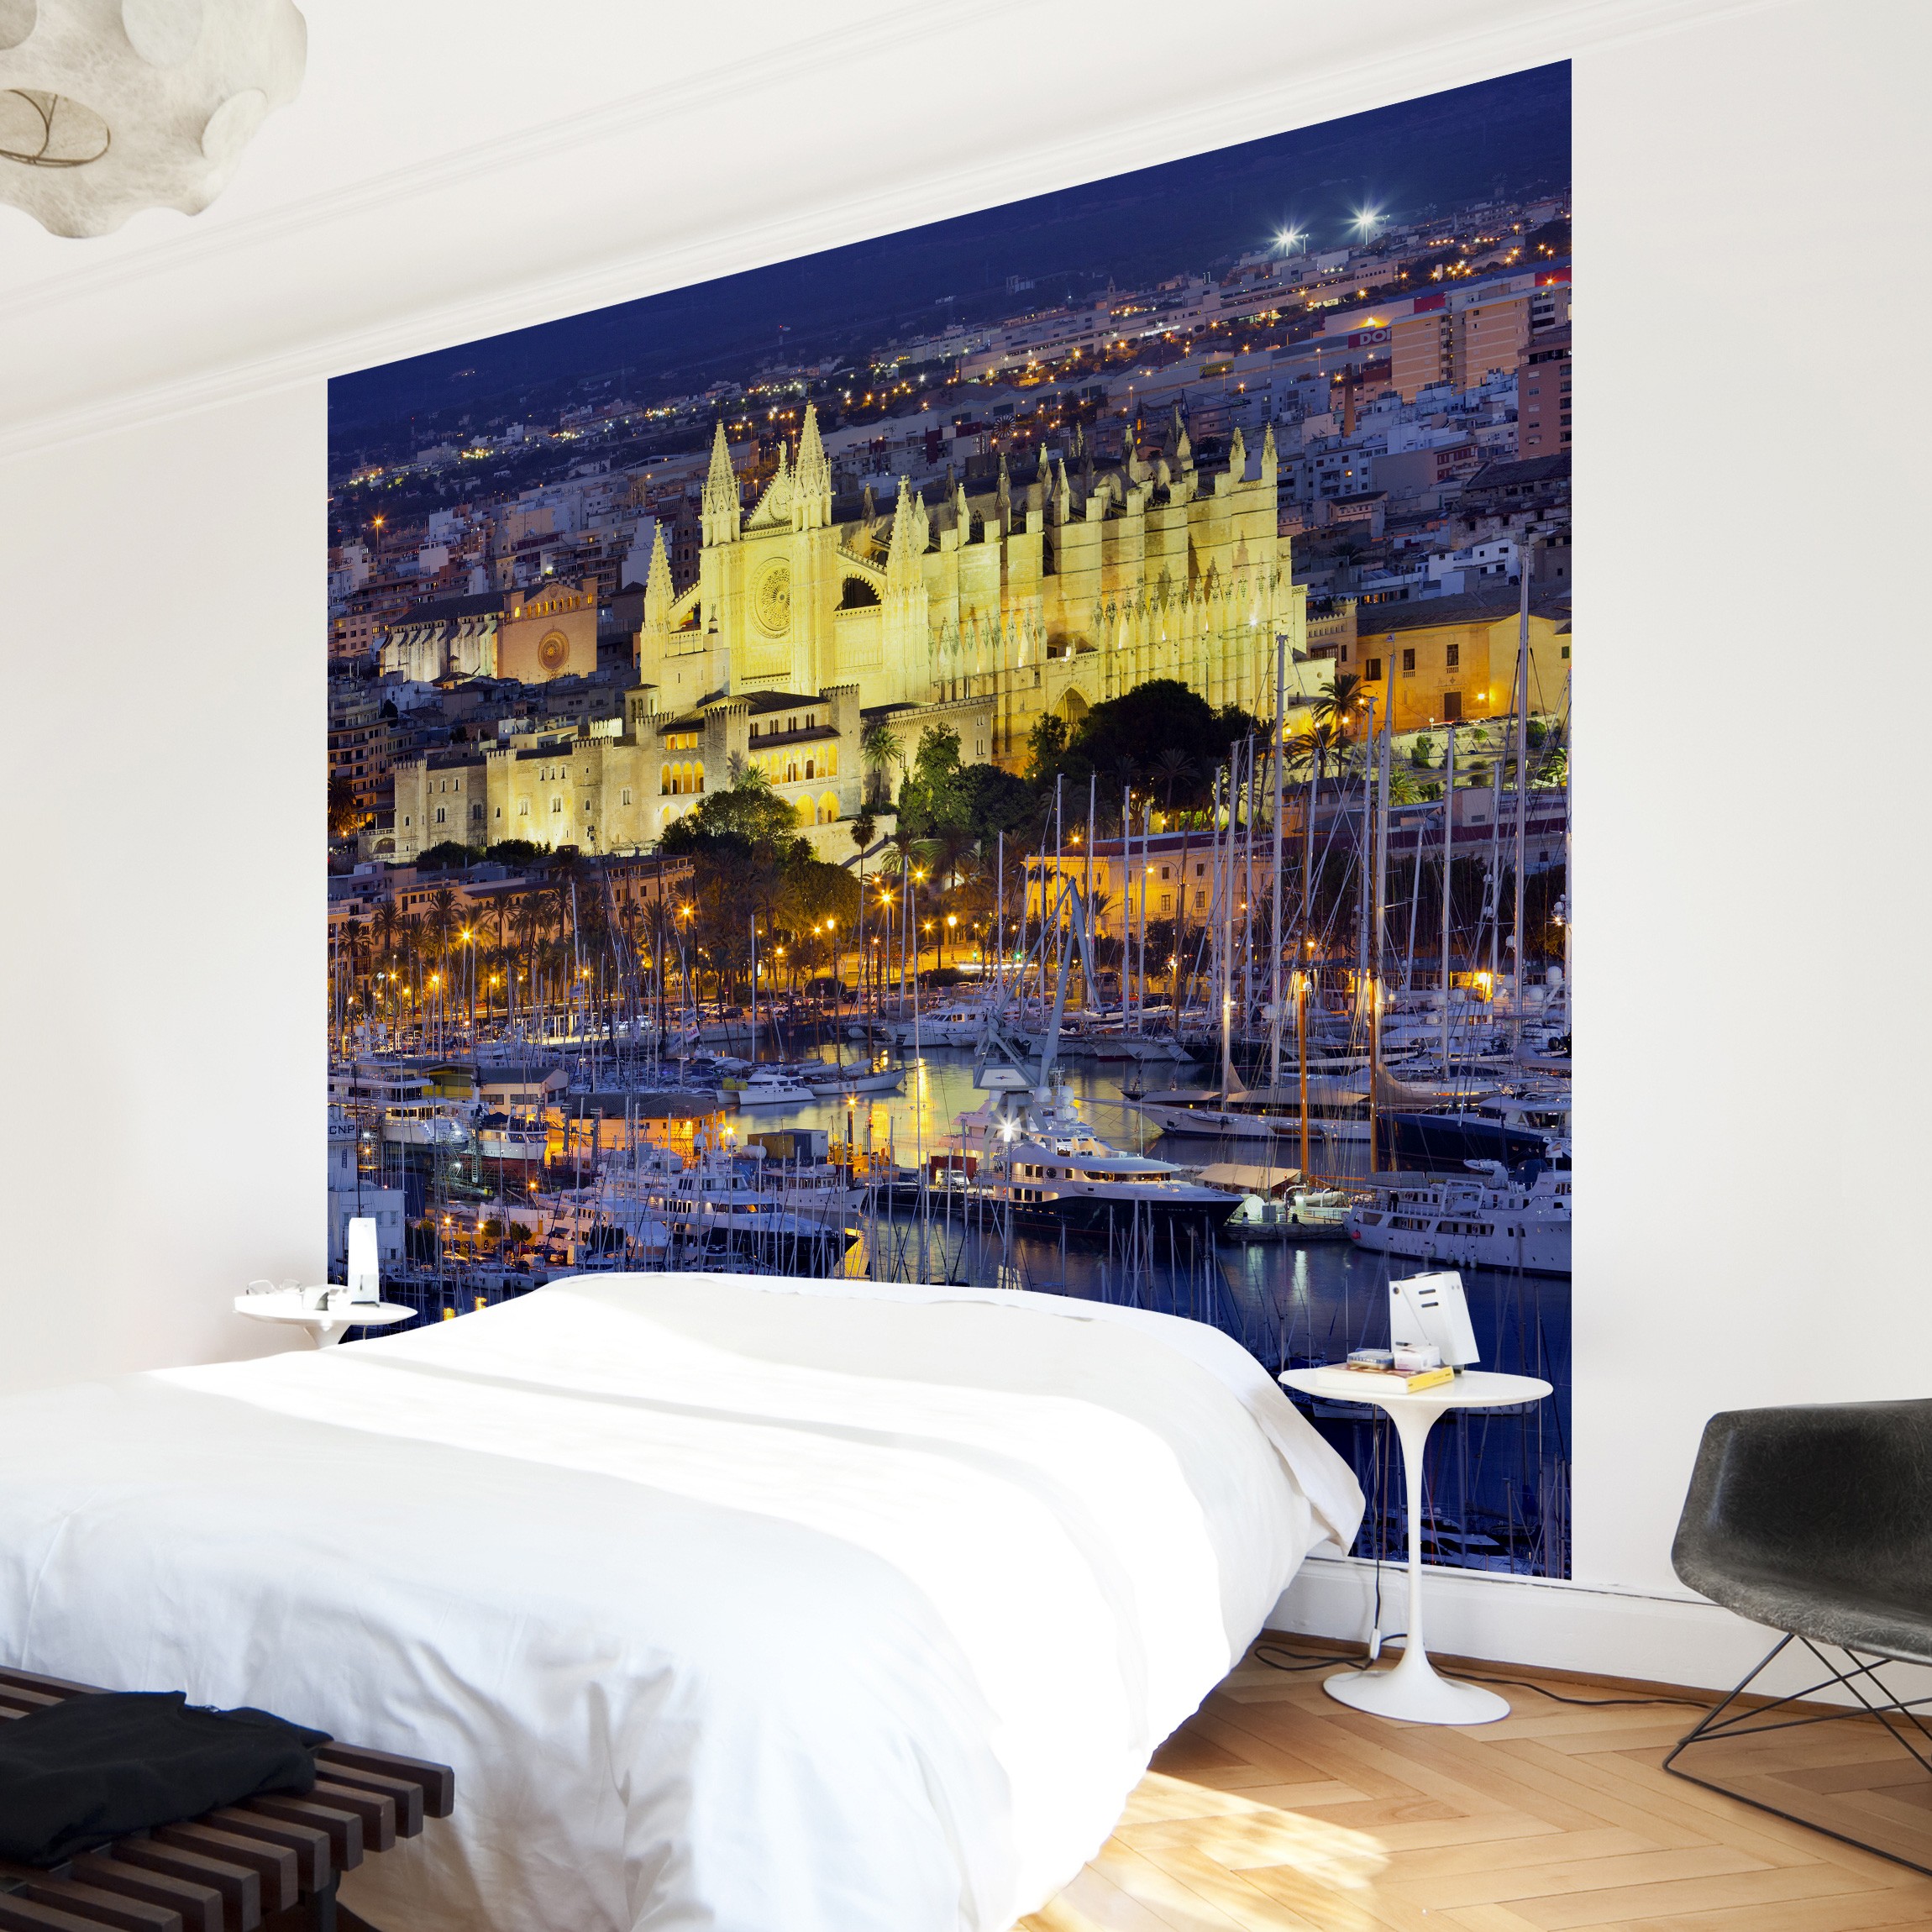 Vliestapete Premium Palma De Mallorca City Skyli 1 - 4 Mur Papier Peint Galaxi , HD Wallpaper & Backgrounds